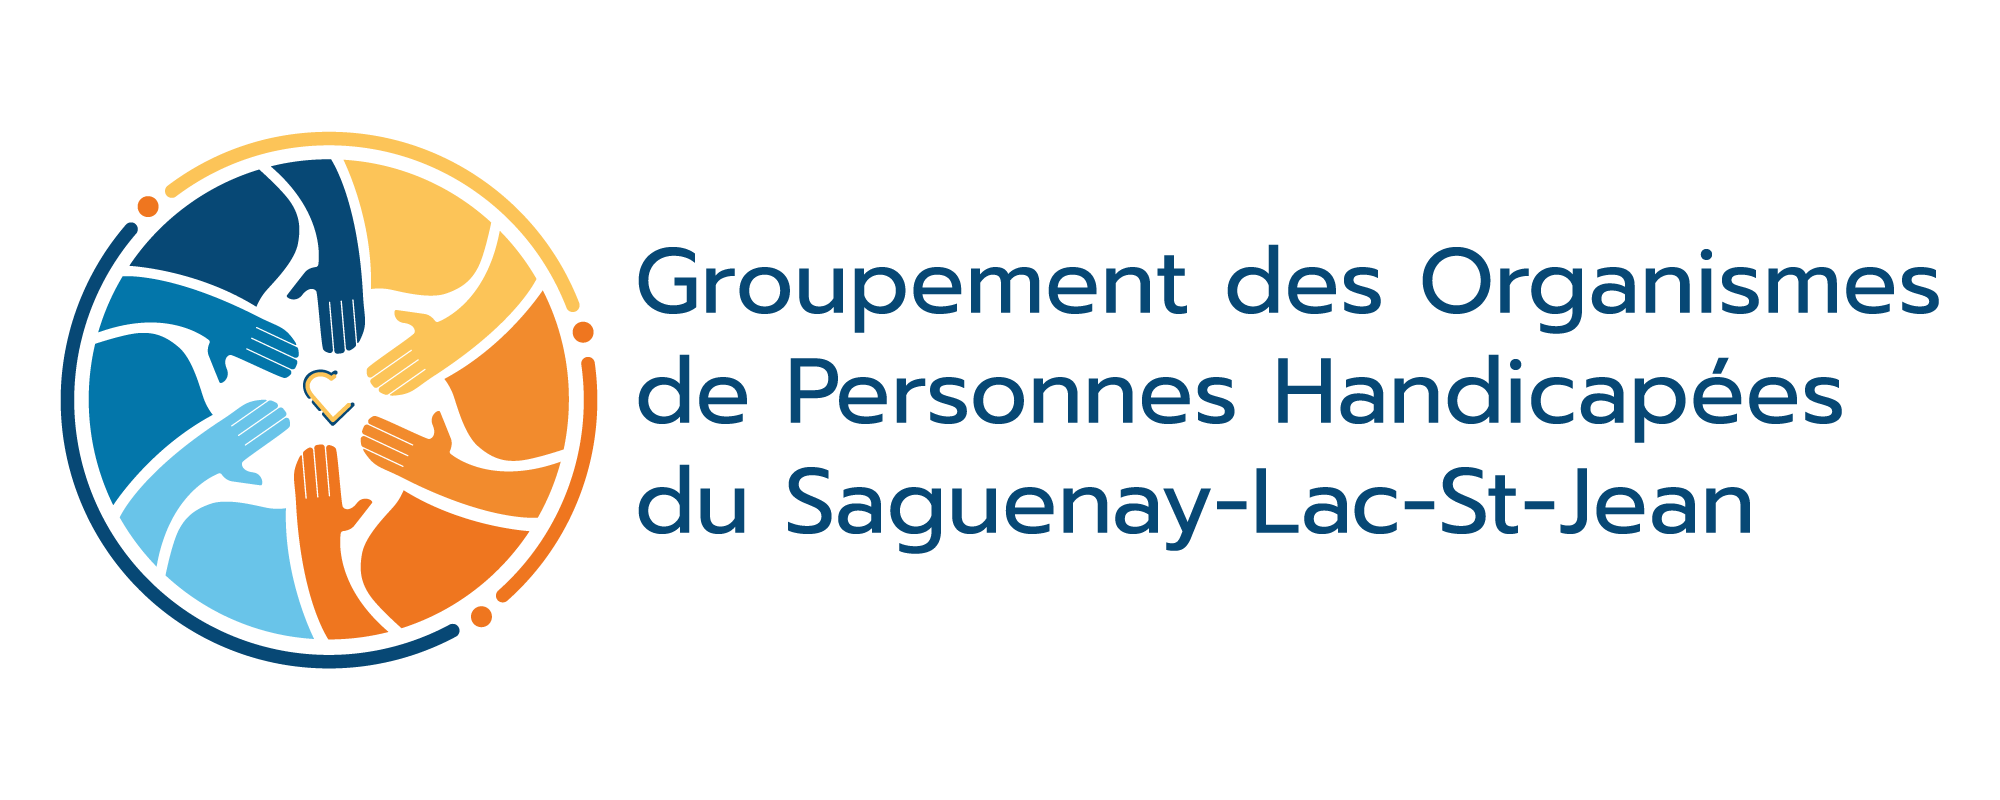 Logo complet du Groupement des Organismes de Personnes Handicapées du Saguenay-Lac-Saint-Jean